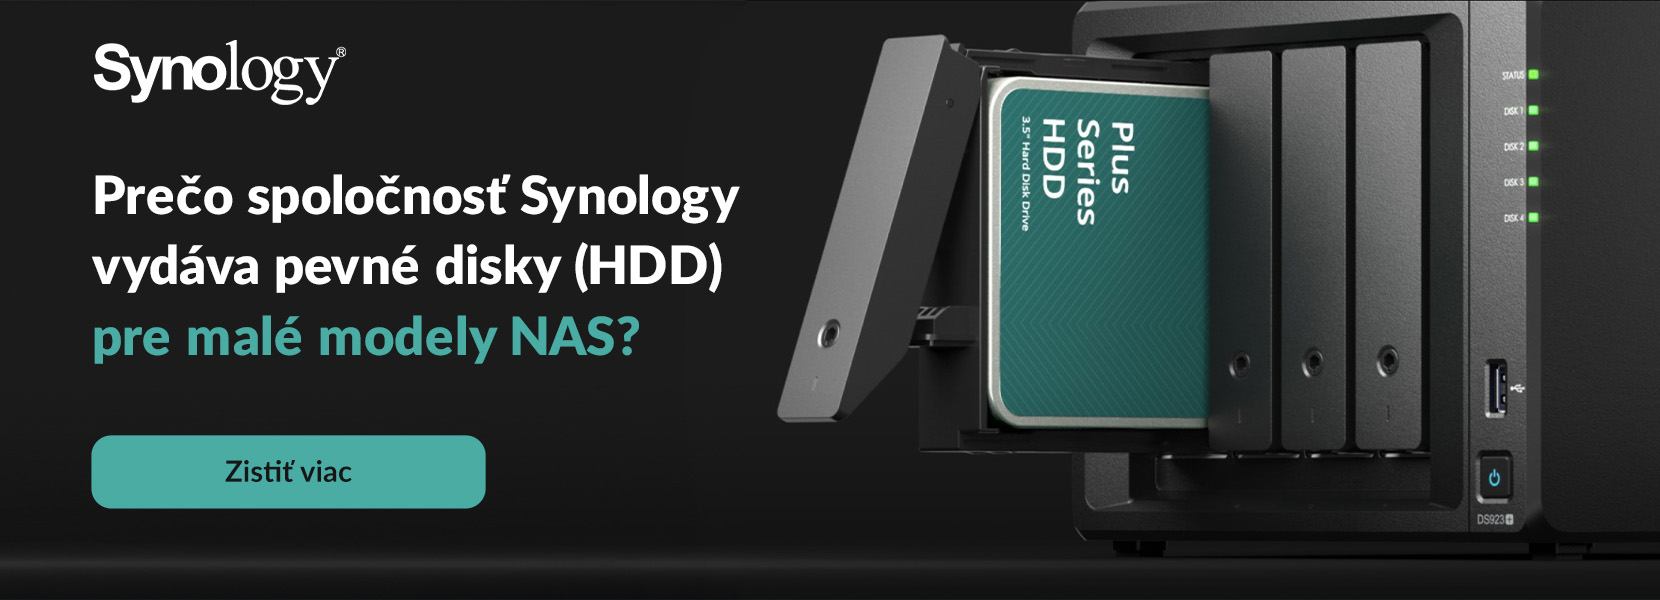 Prečo spoločnosť Synology vydáva pevné disky (HDD) pre malé modely NAS?